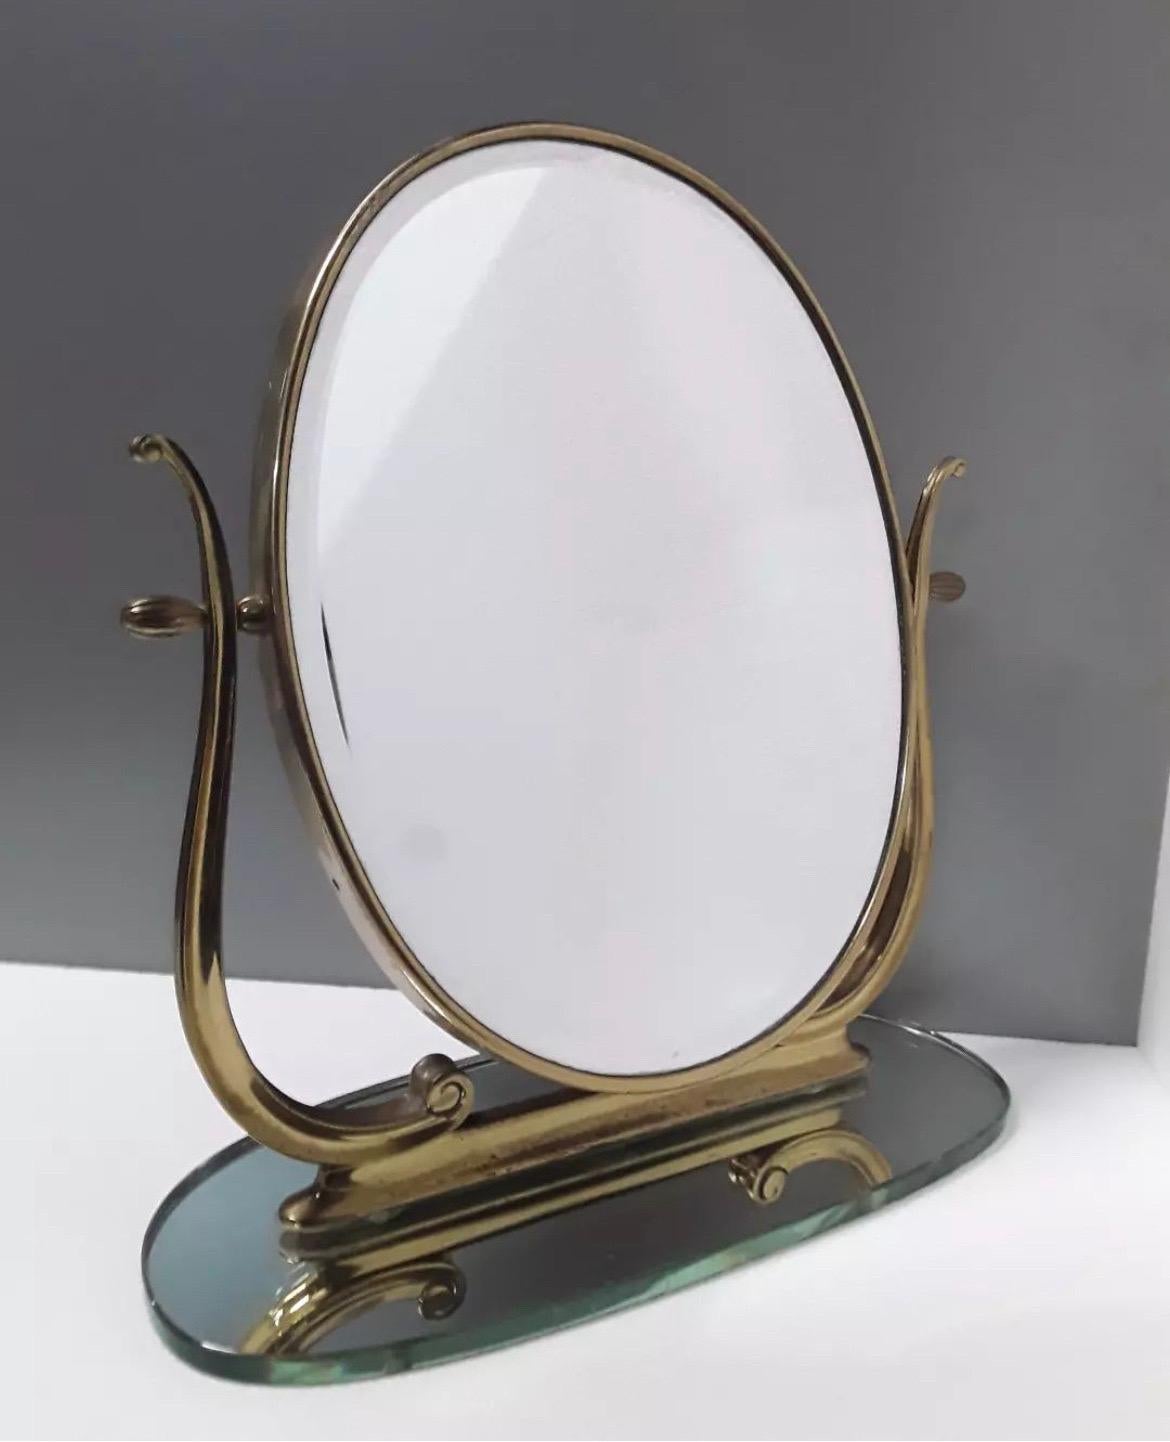 Splendido ed elegante specchio da tavolo o da toeletta in ottone e vetro della metà del secolo scorso, prodotto intorno al 1940

Misure

Cm 42 larghezza
Cm 45 altezza 
Cm 22 profondità 